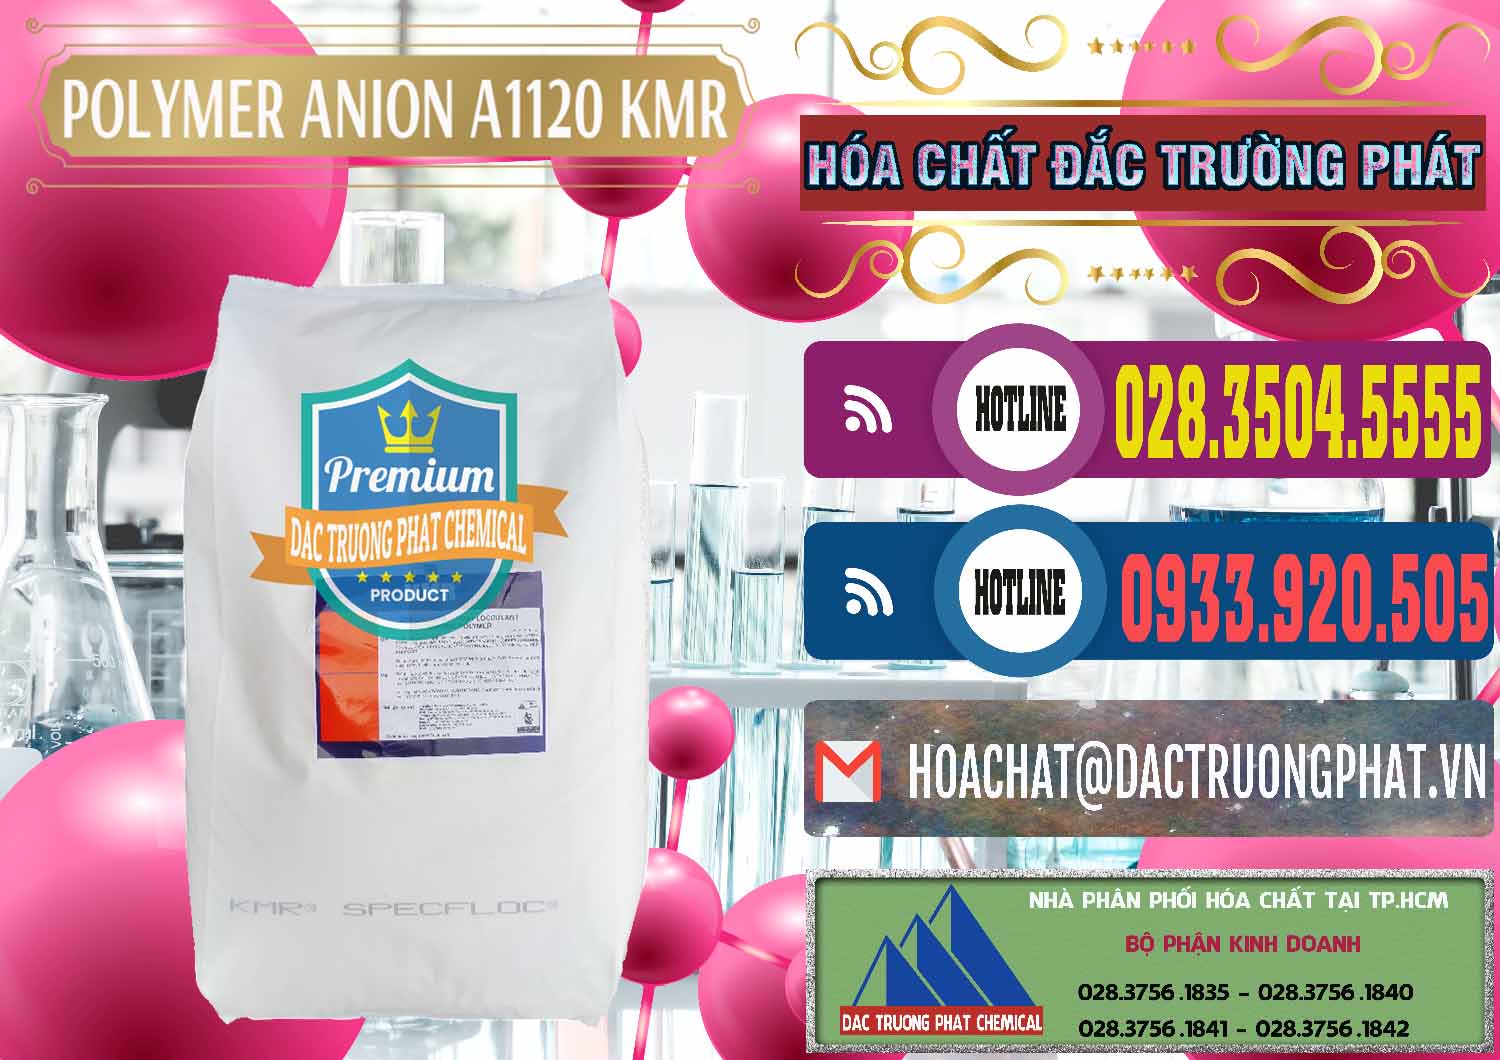 Cty chuyên bán _ phân phối Polymer Anion A1120 - KMR Anh Quốc England - 0119 - Công ty kinh doanh và phân phối hóa chất tại TP.HCM - muabanhoachat.com.vn